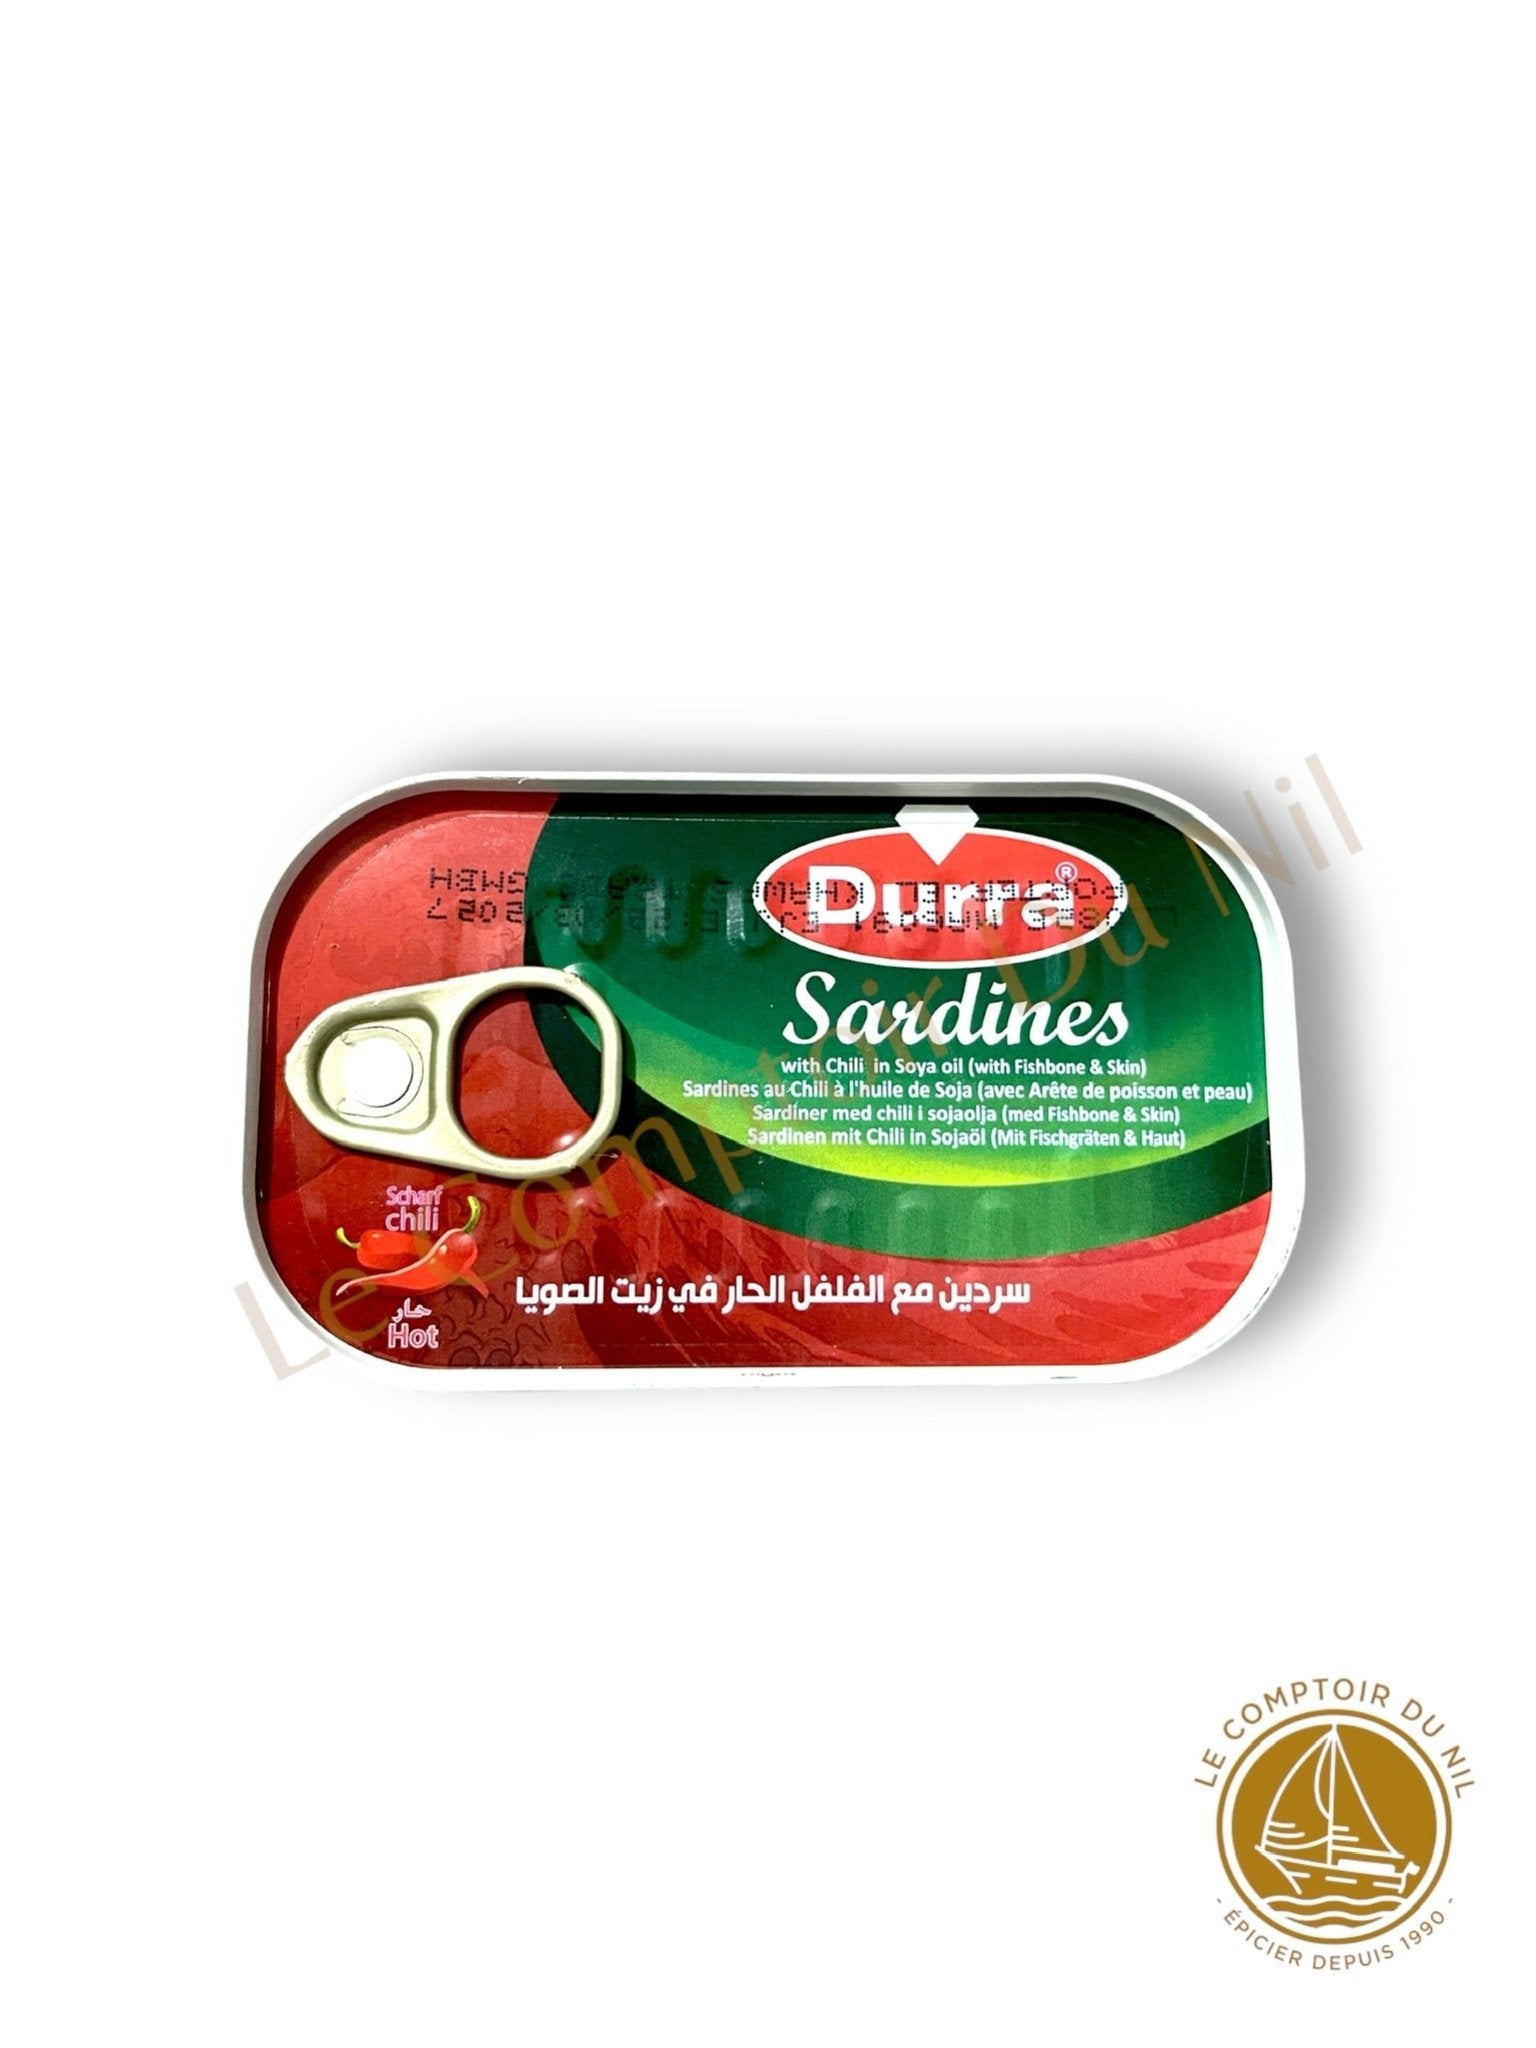 DURRA - Sardines sweet chili